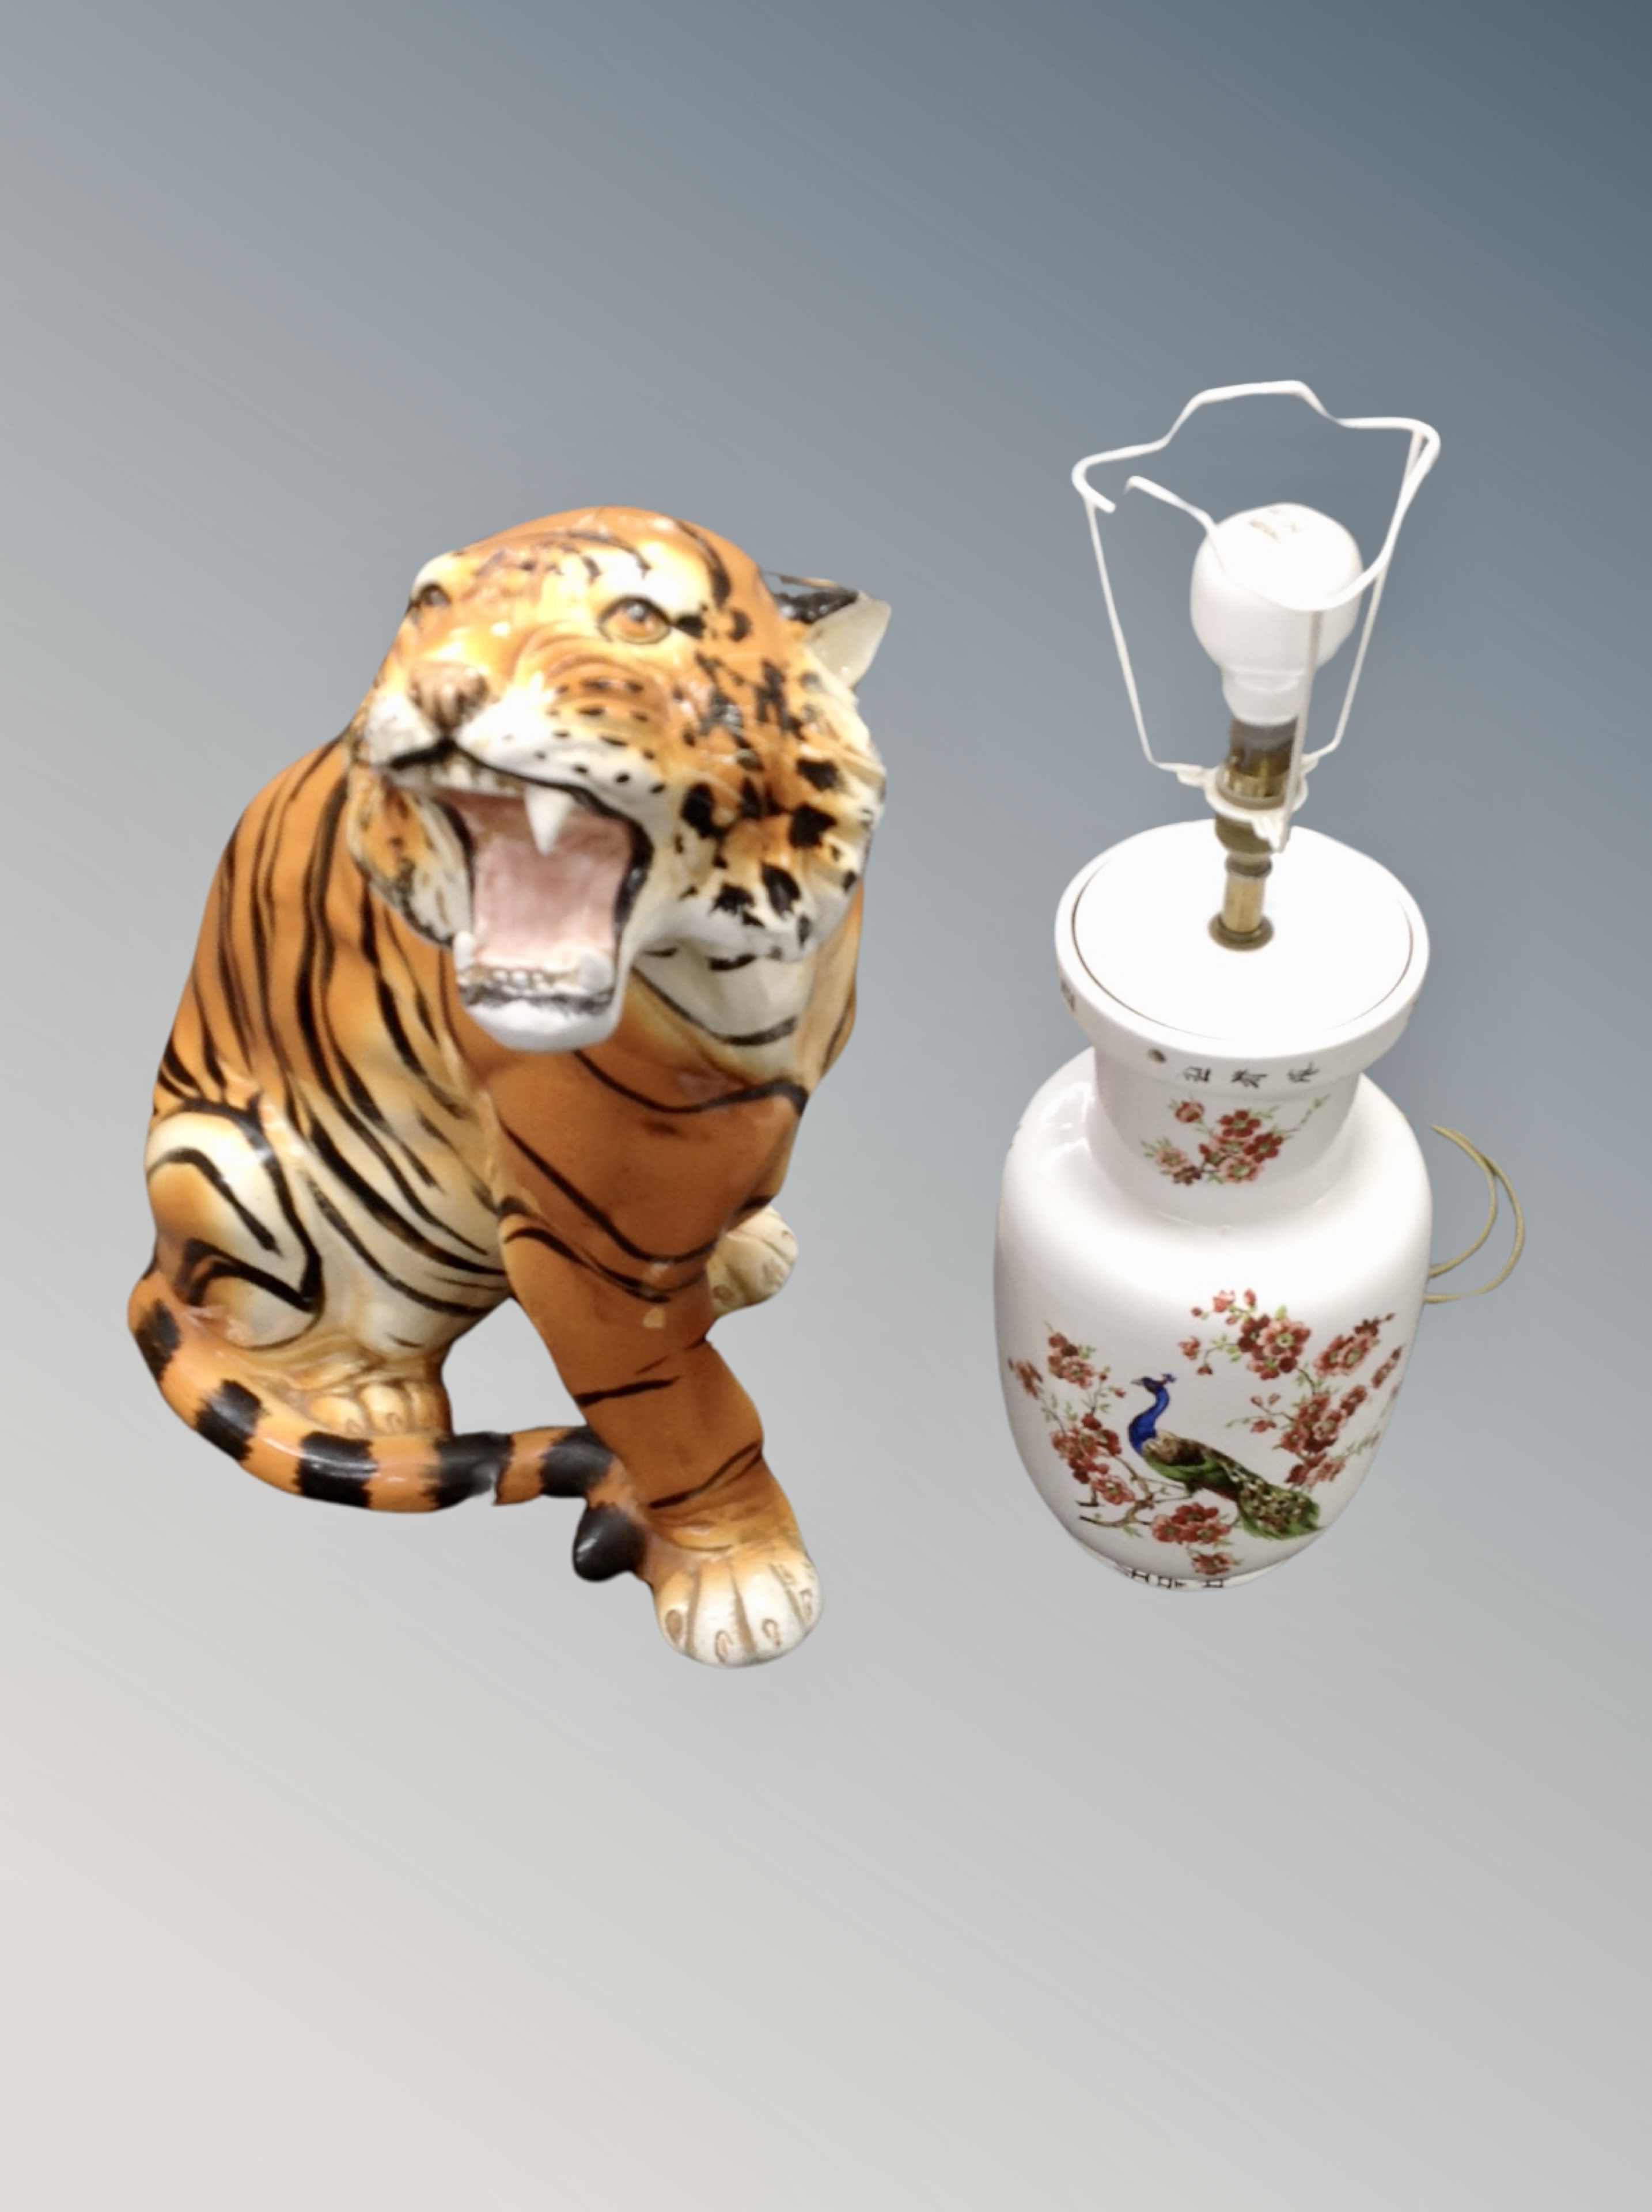 A ceramic figure of a tiger,